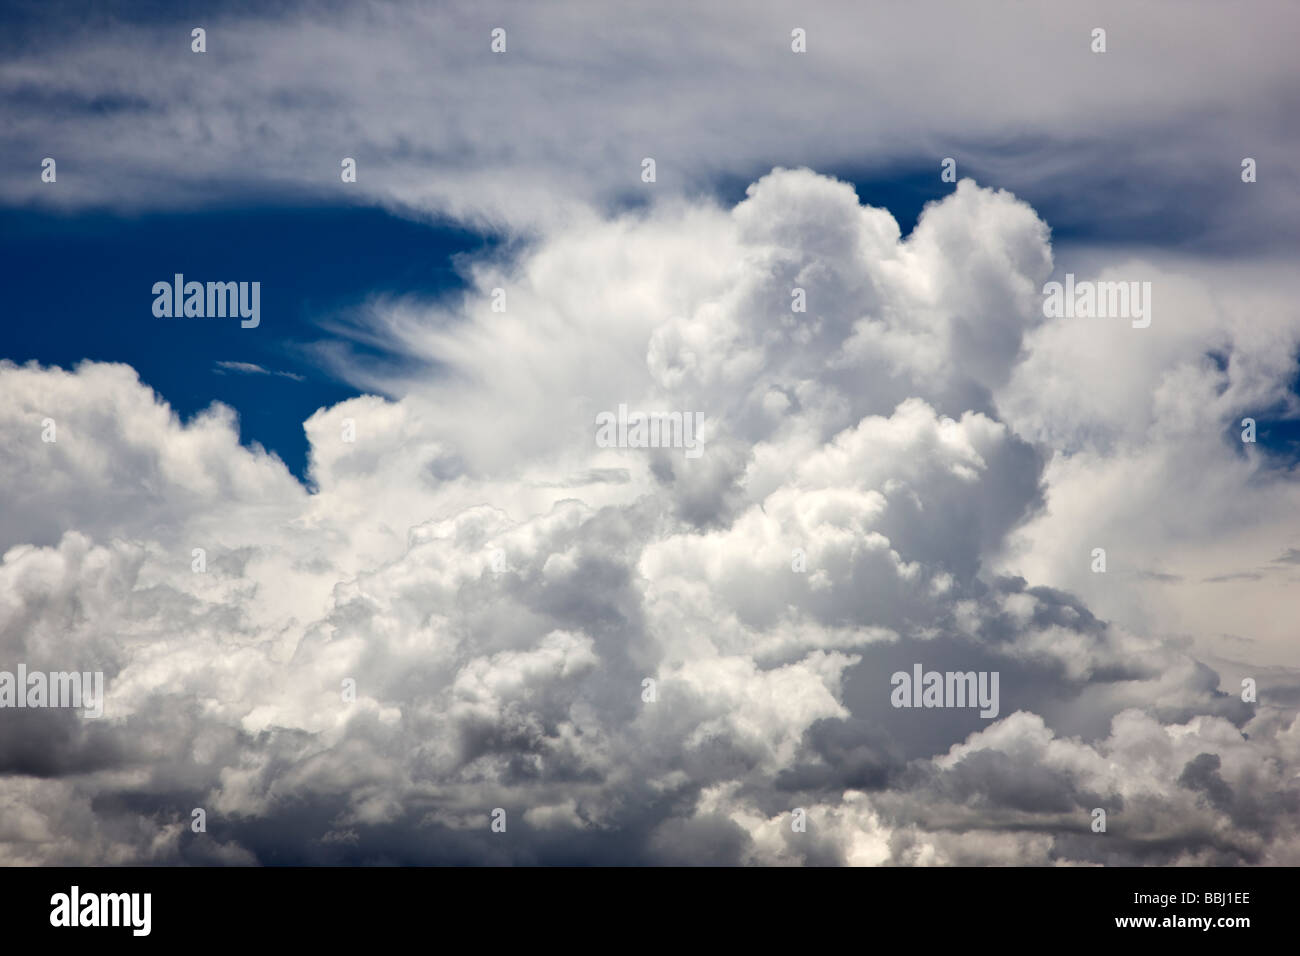 Geschwollene weißen Luž Wolken vor einem strahlend blauen Himmel Highway 50 Curecanti National Recreation Area Colorado USA Stockfoto